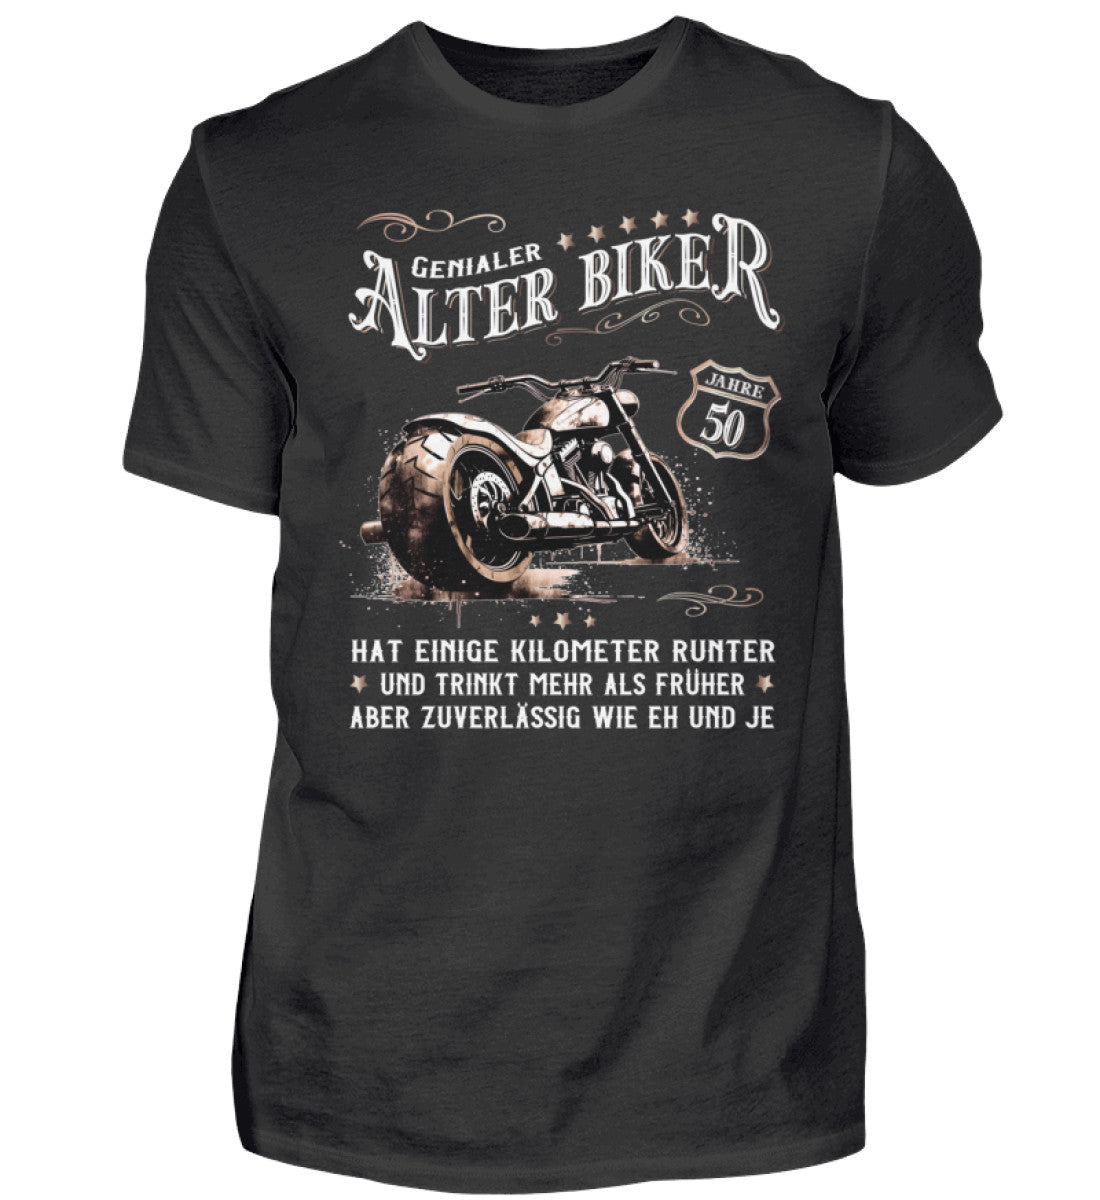 Ein Biker T-Shirt zum Geburtstag für Motorradfahrer von Wingbikers mit dem Aufdruck, Alter Biker - 50 Jahre - Einige Kilometer runter, trinkt mehr - aber zuverlässig wie eh und je - in schwarz.